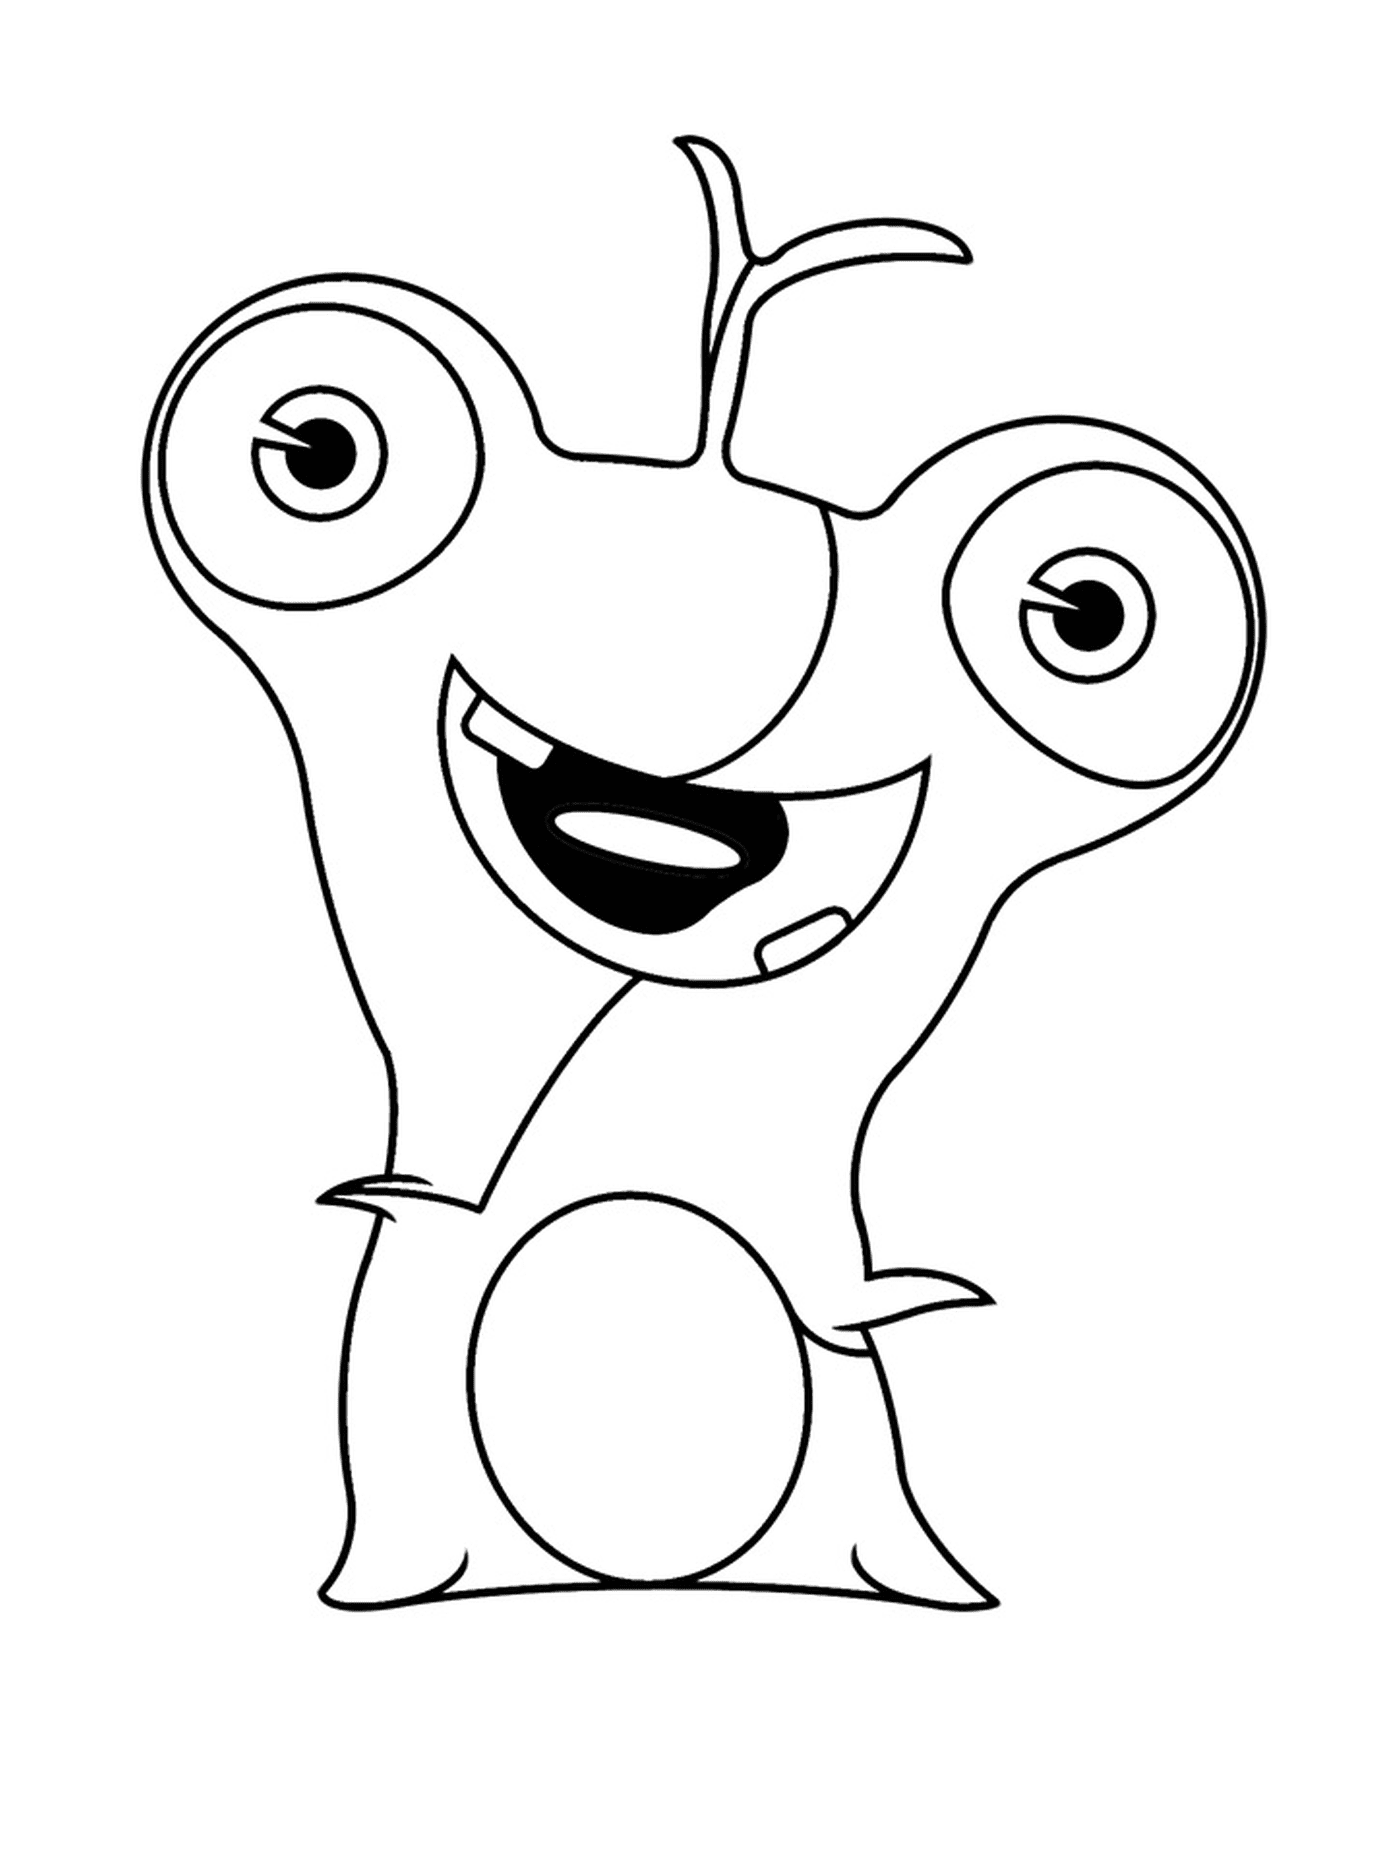   Polero, personnage de dessin animé 